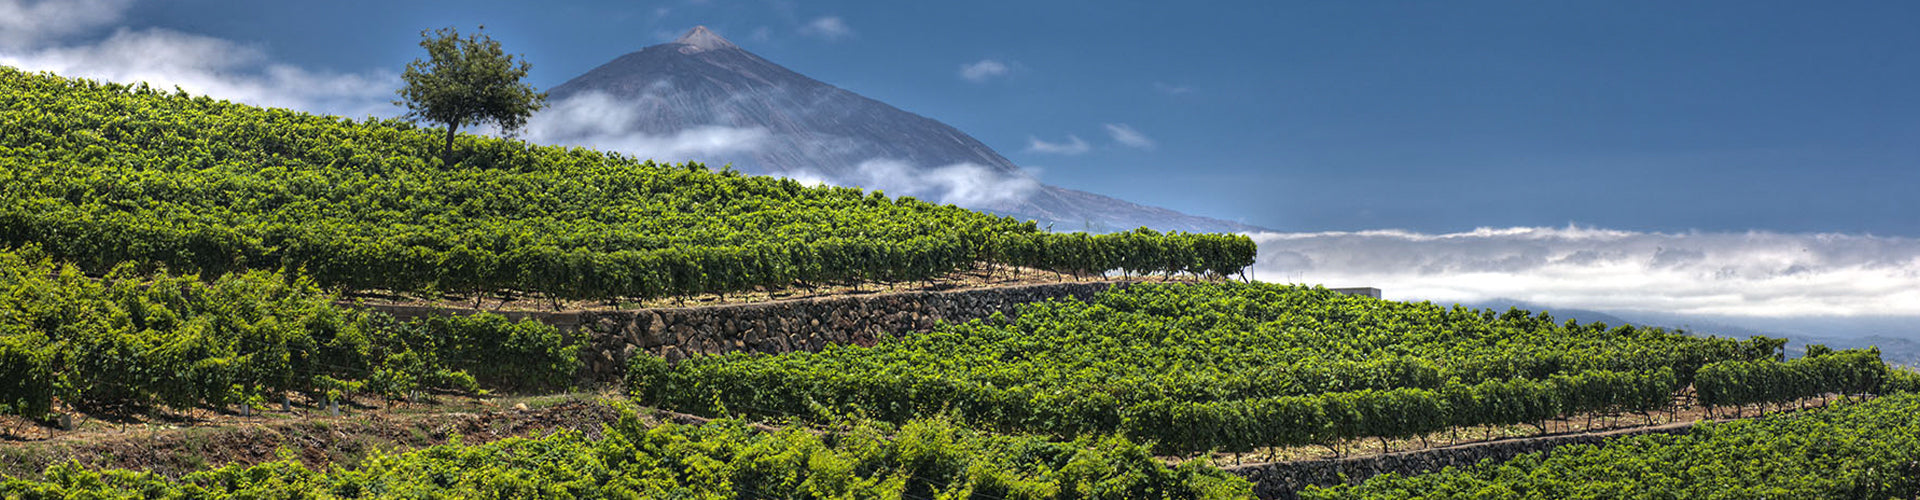 Bodegas Viñátigo Vineyards in Tenerife